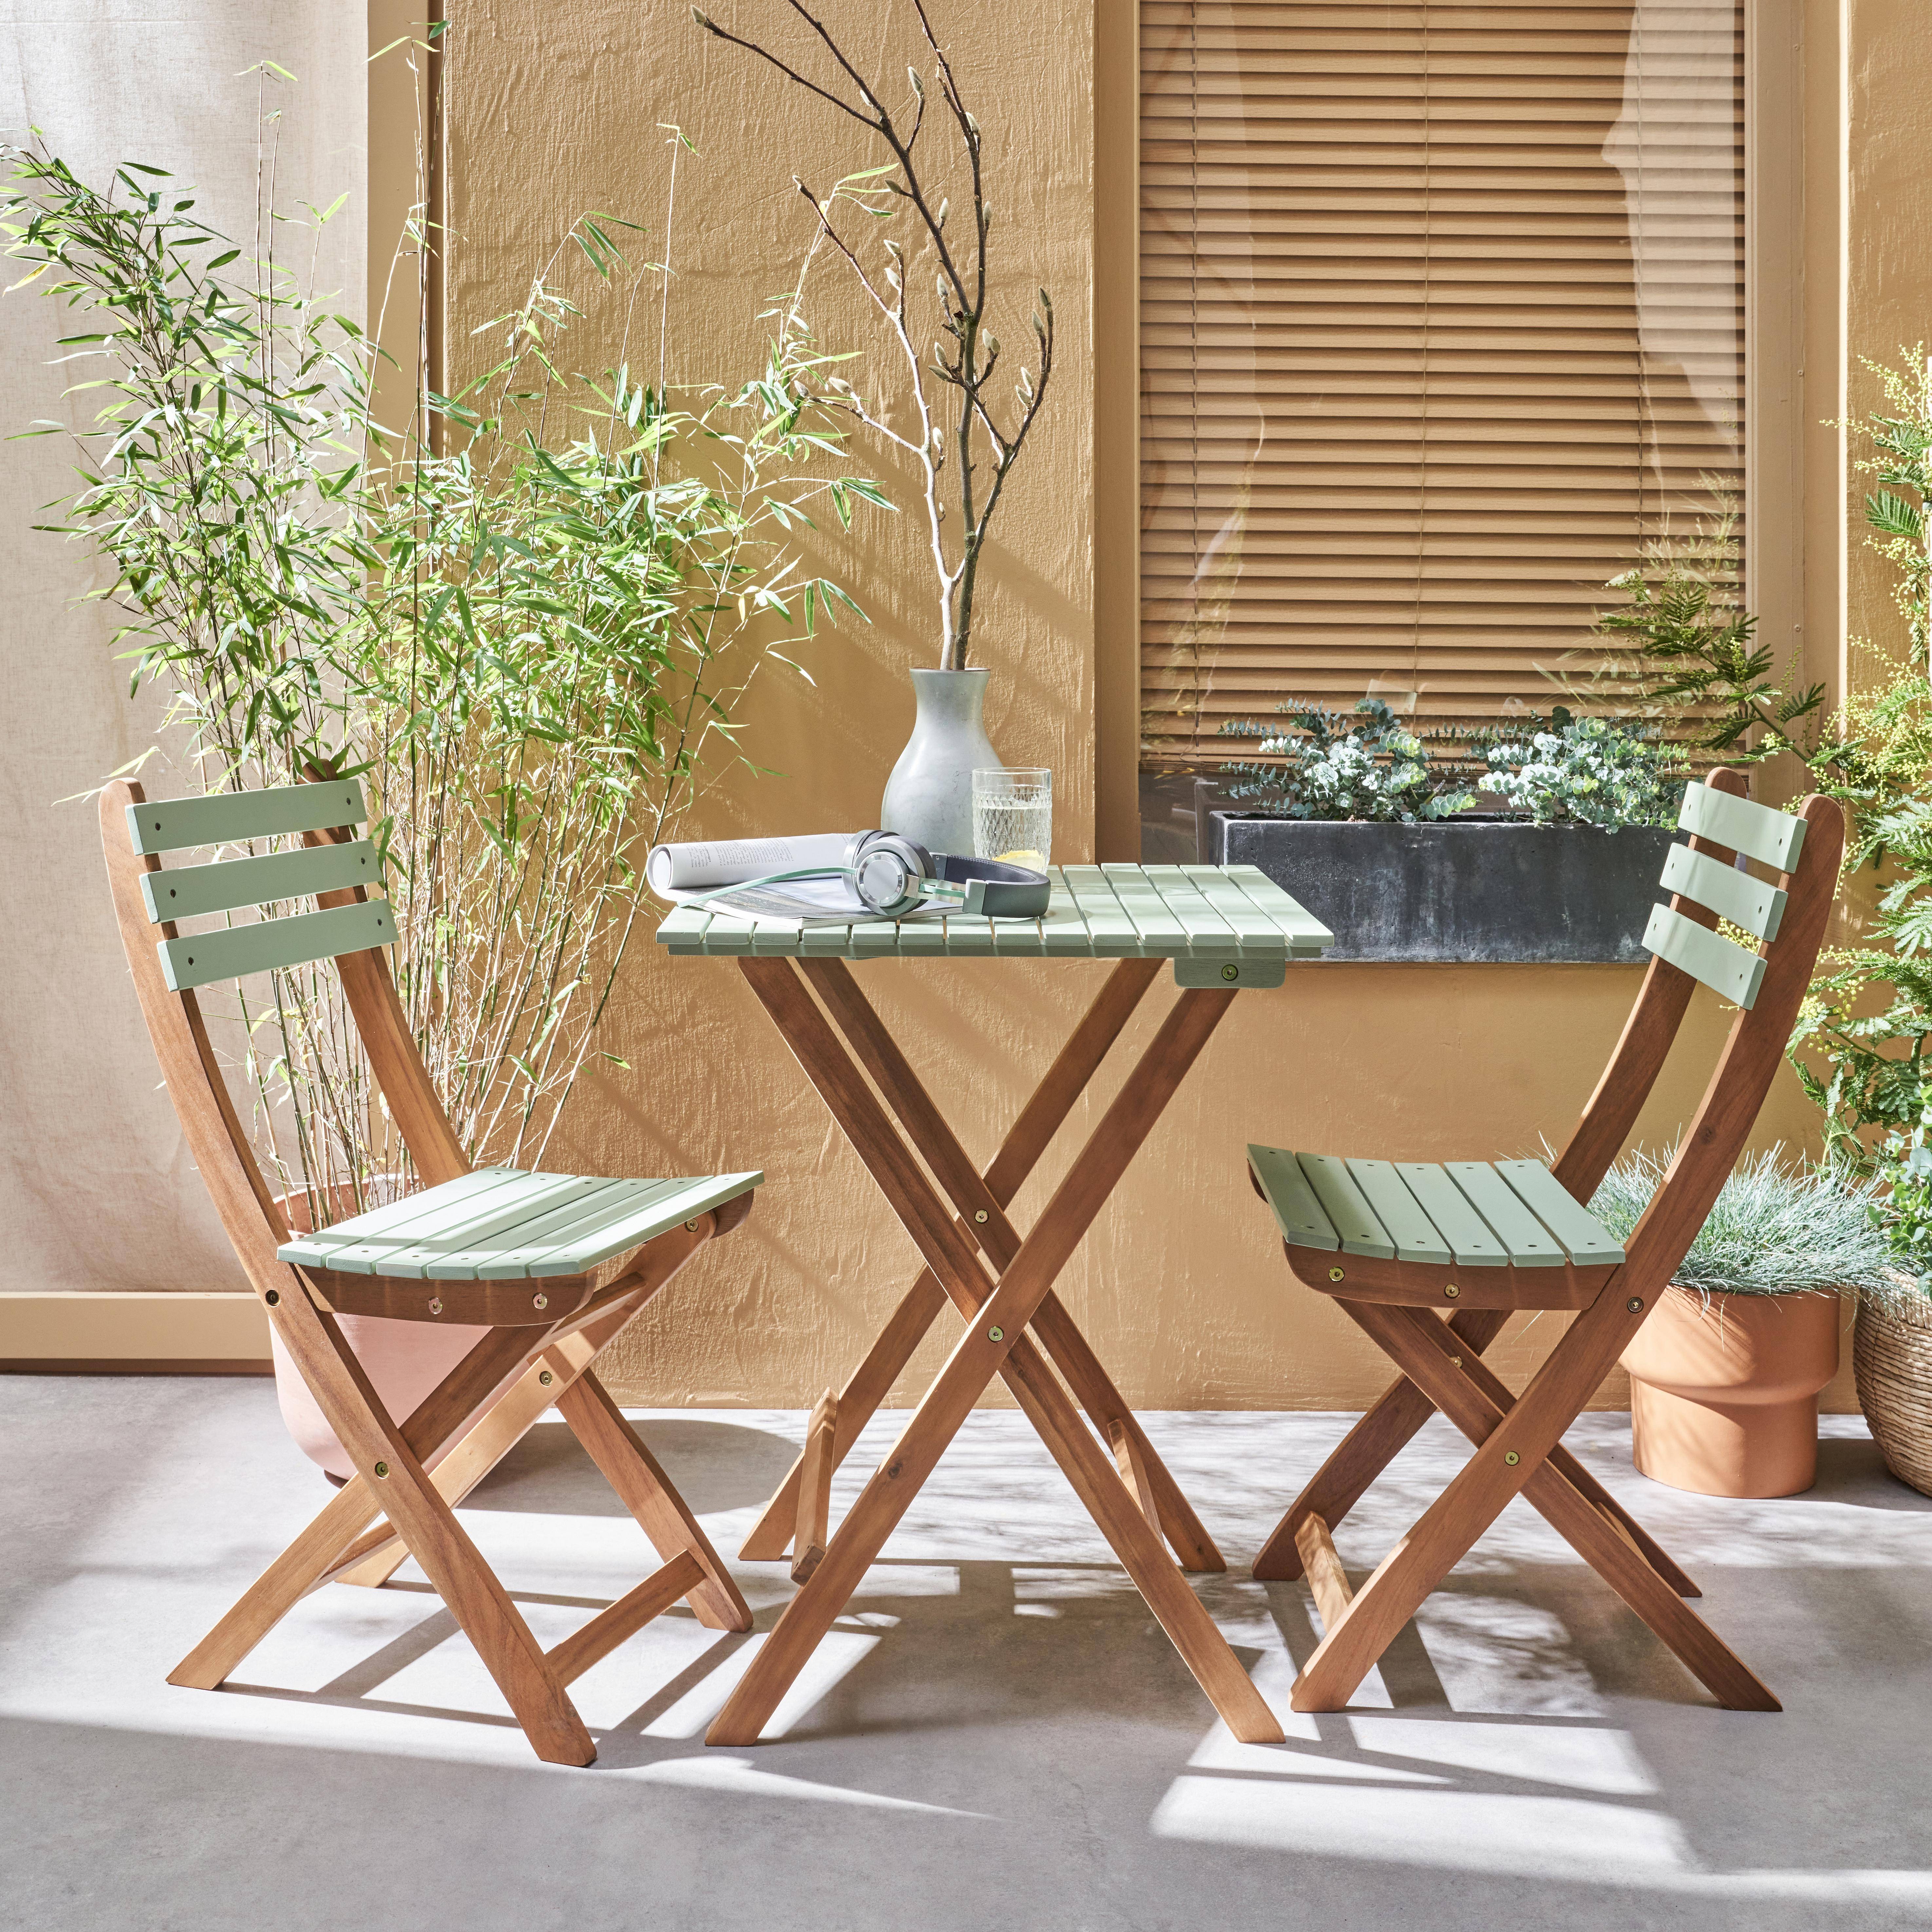 Conjunto de jardín de madera Bistro 60x60cm - Barcelona - verde grisáceo, mesa plegable bicolor con 2 sillas plegables, acacia,sweeek,Photo1